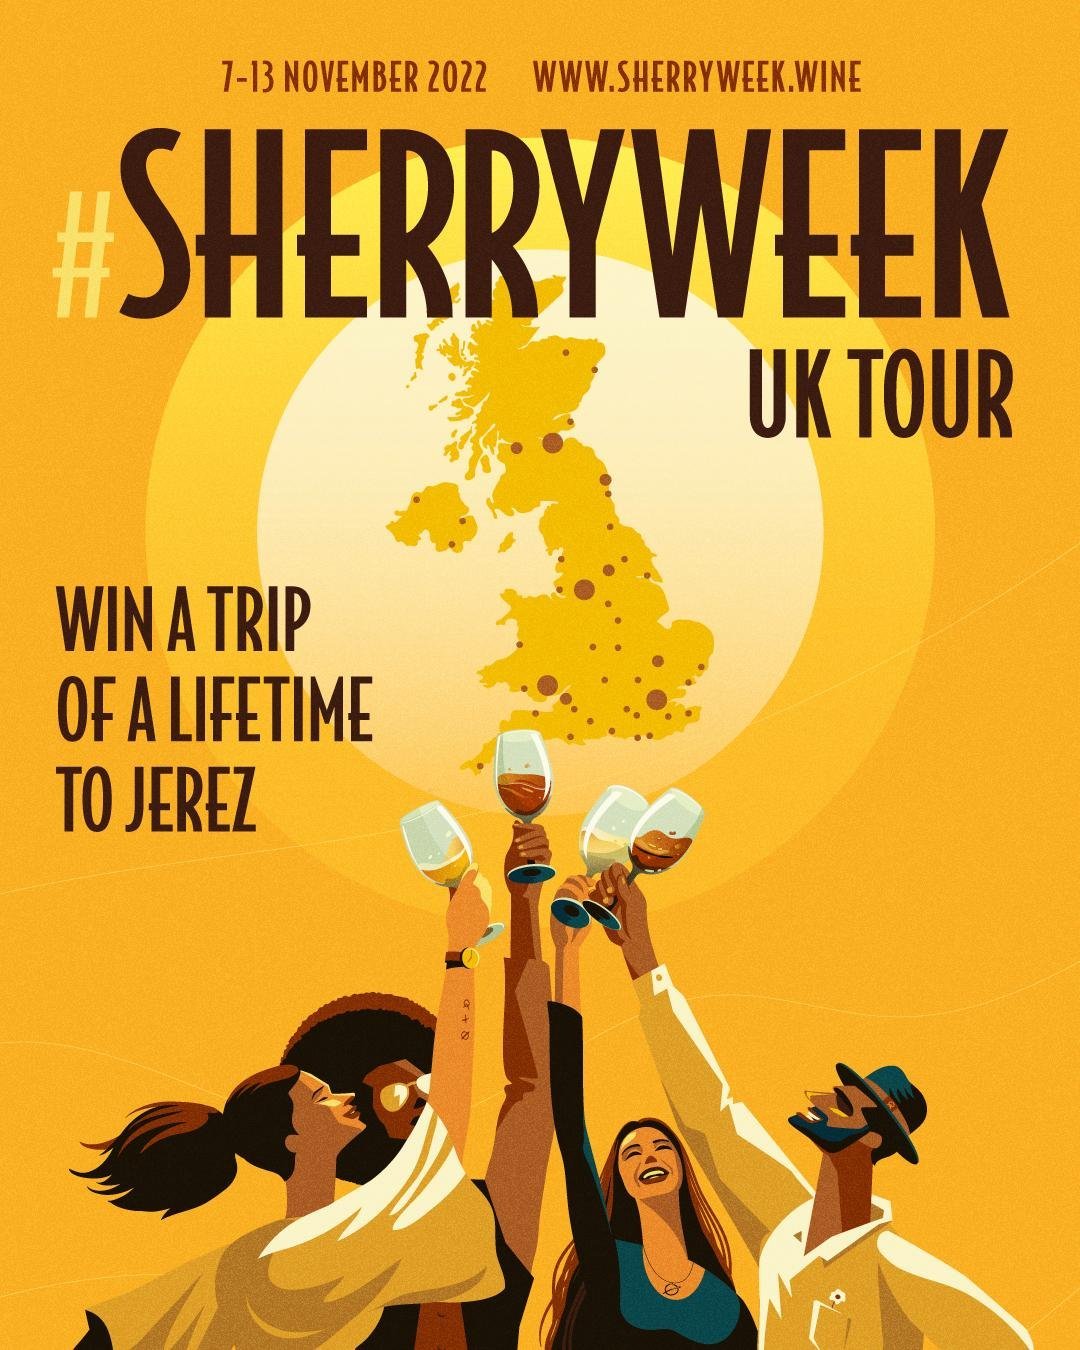 Sherry week UK tour